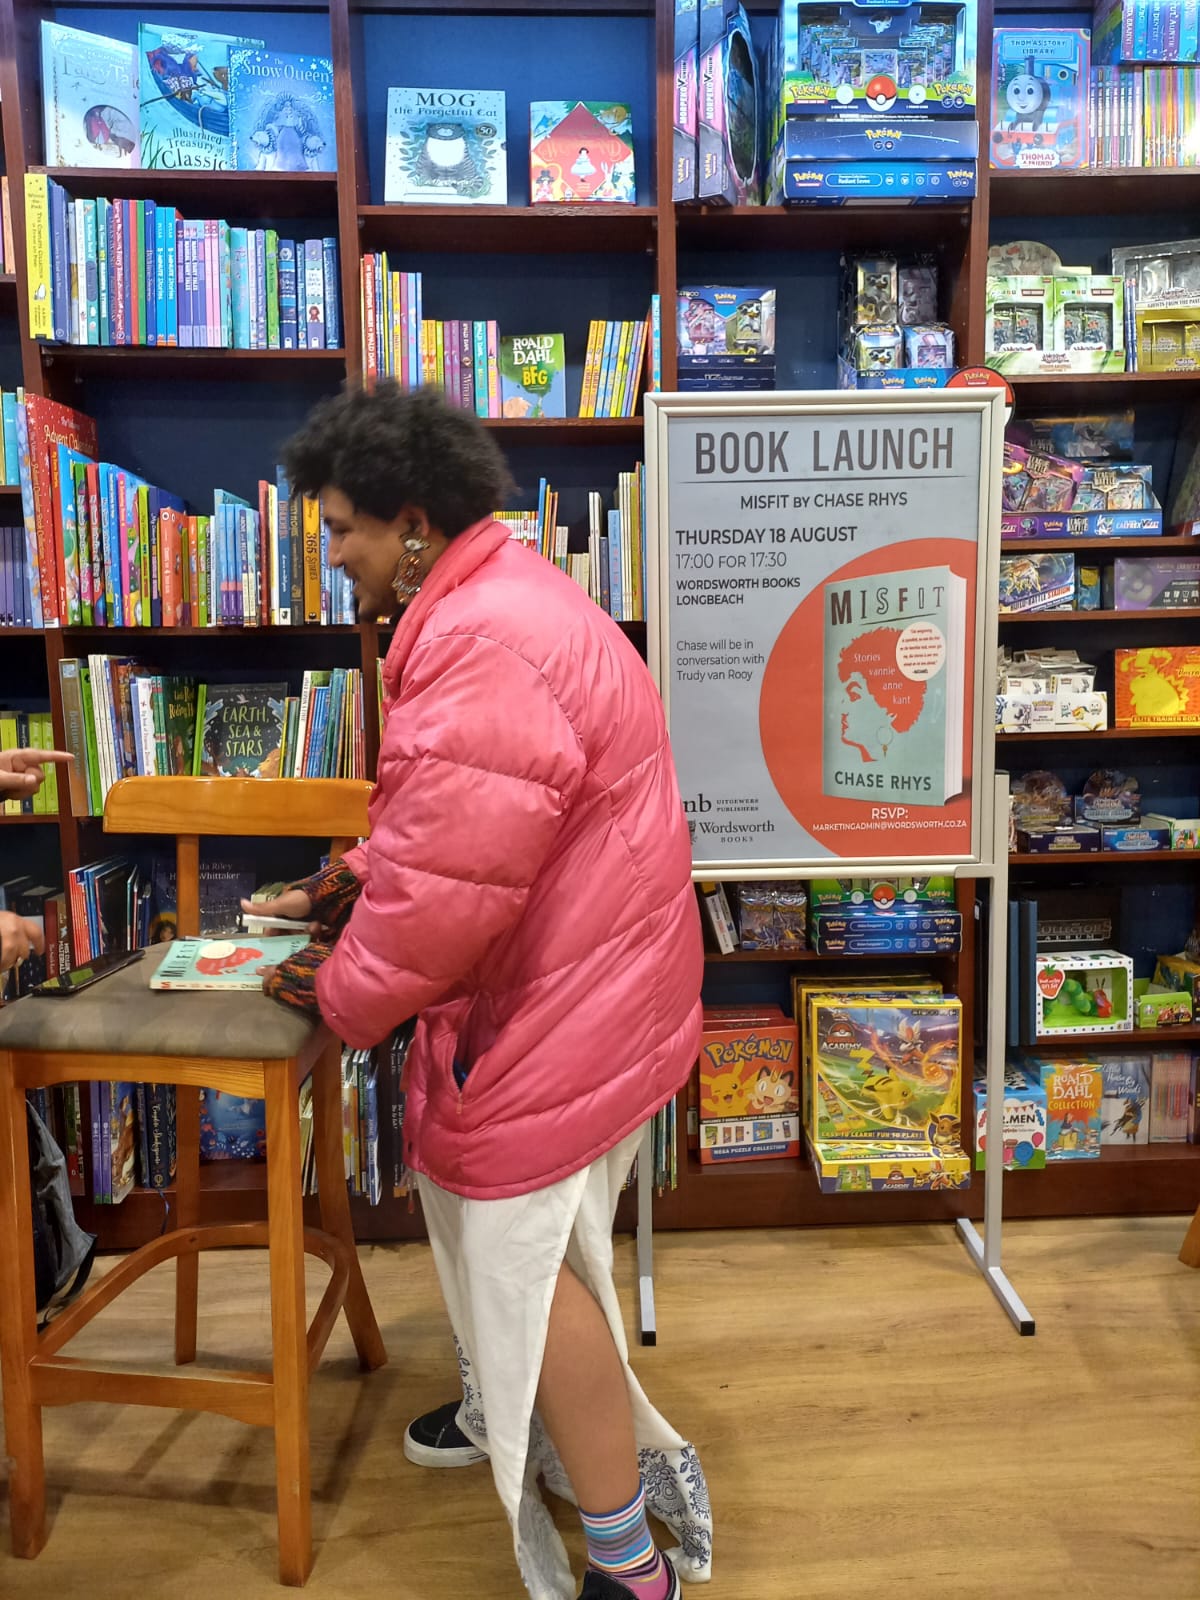 misfit book launch chase rhys wordsworth longbeach mall